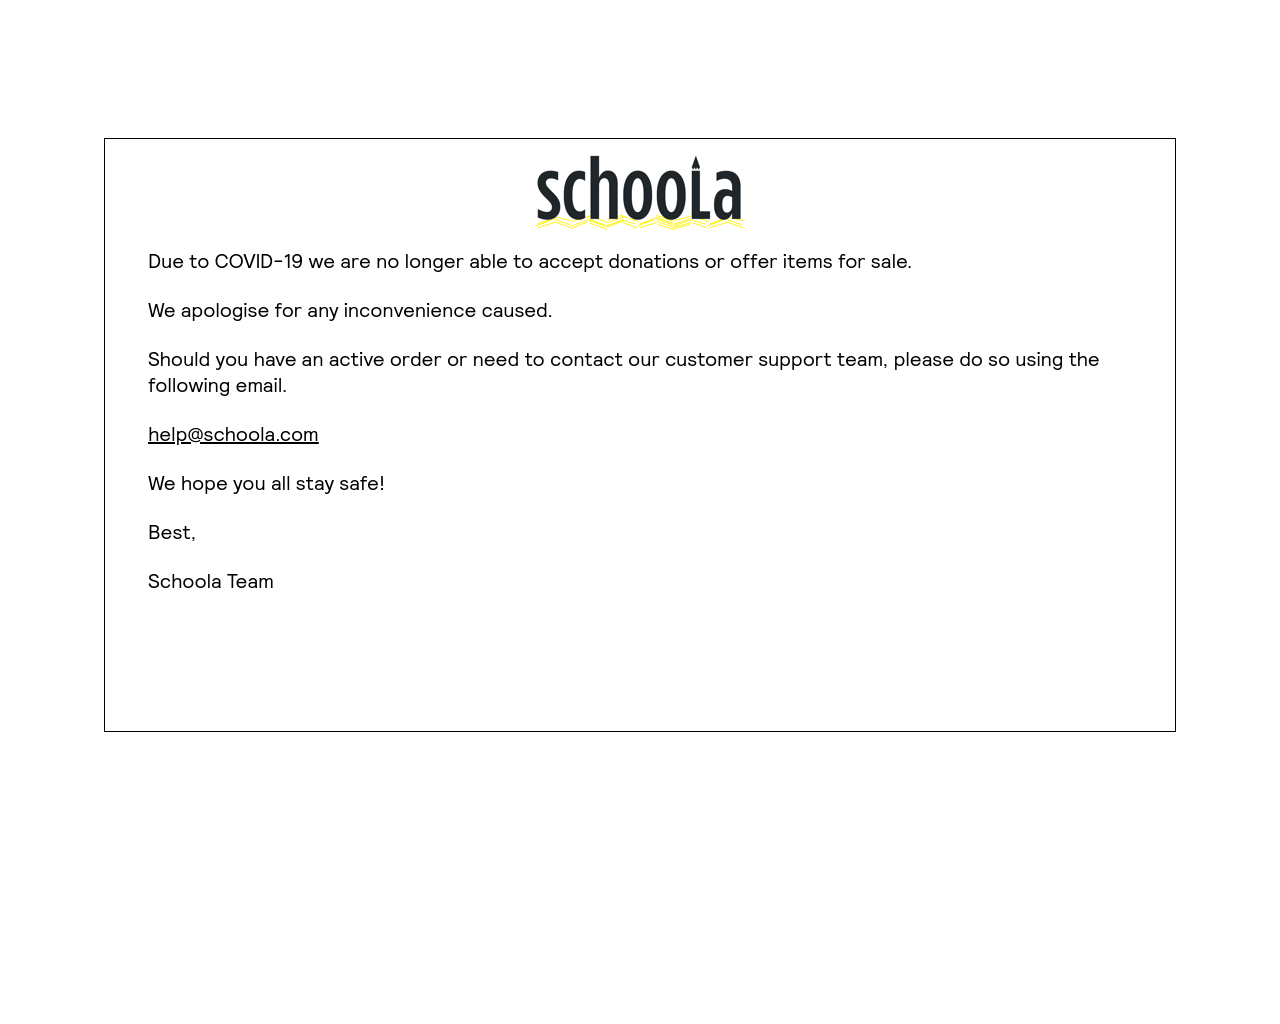 schoola.com